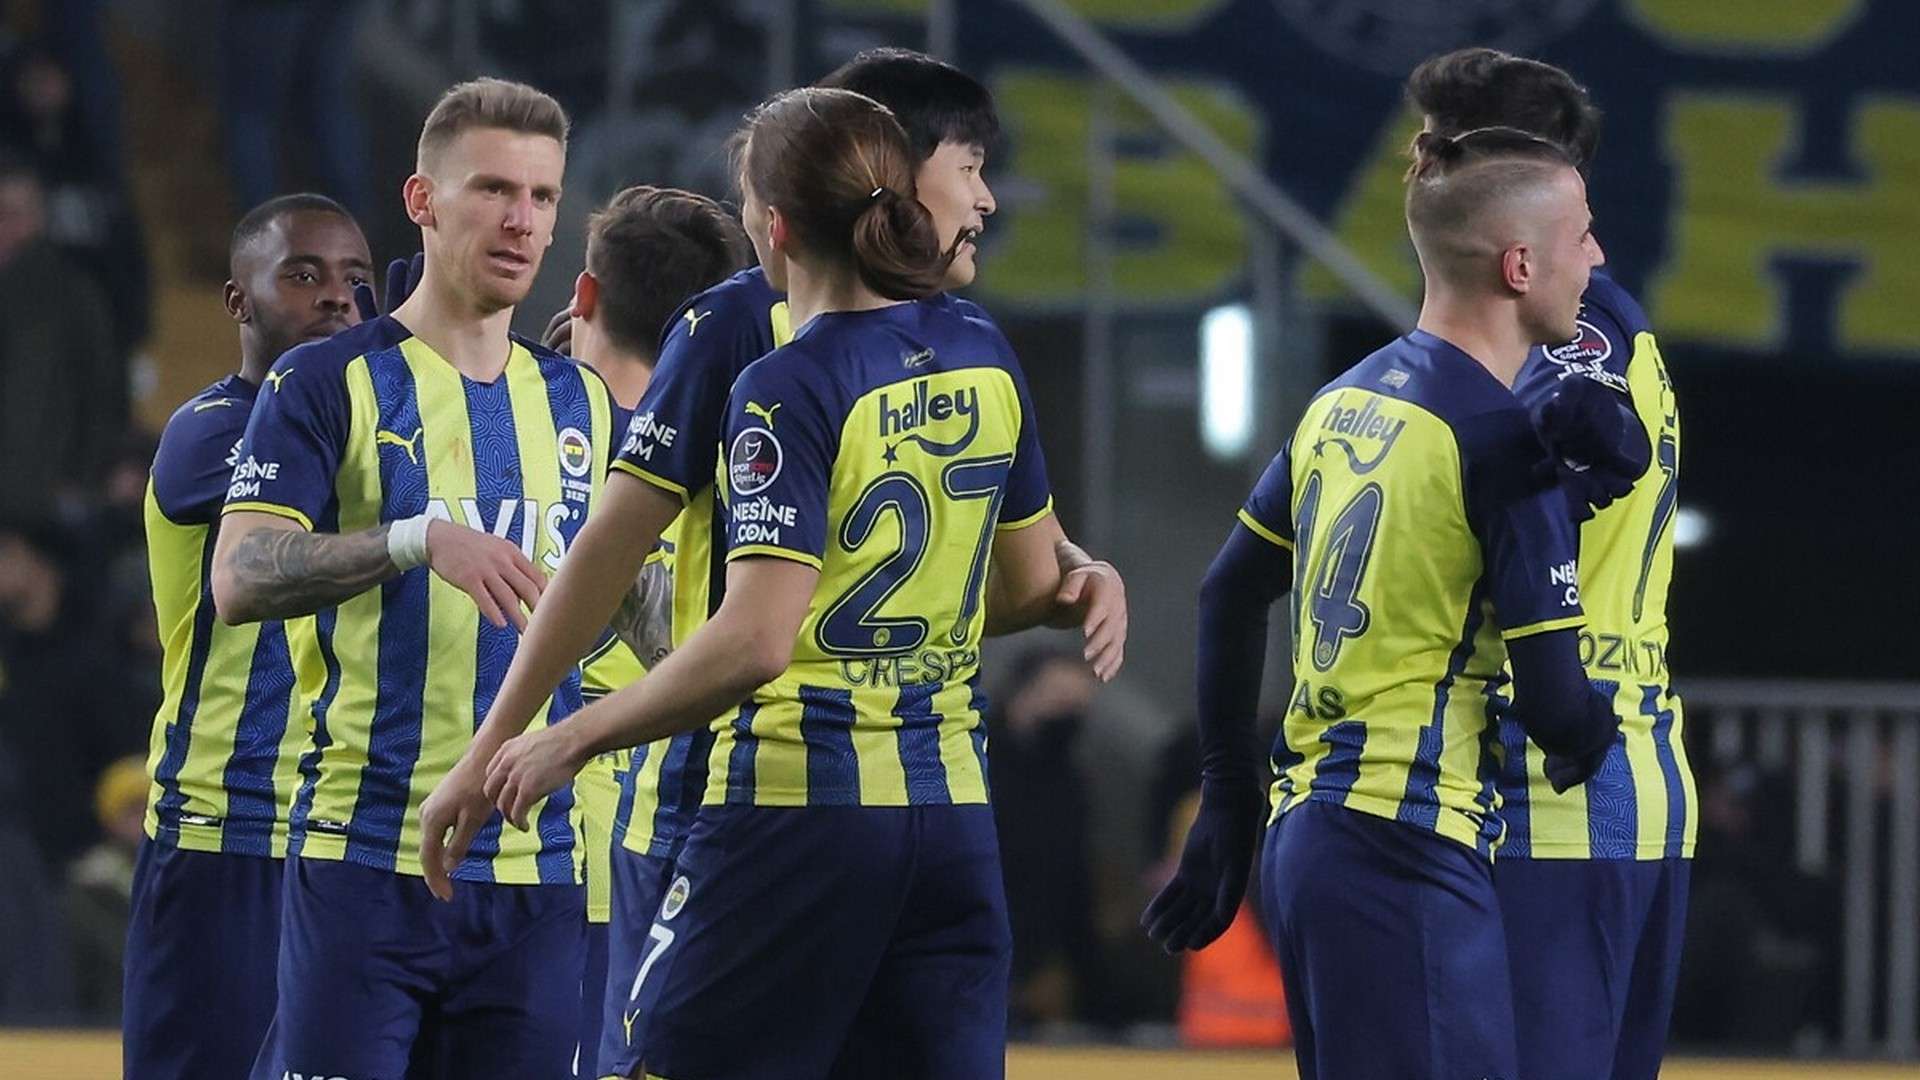 Fenerbahçe vs Konyaspor 03.20.2022